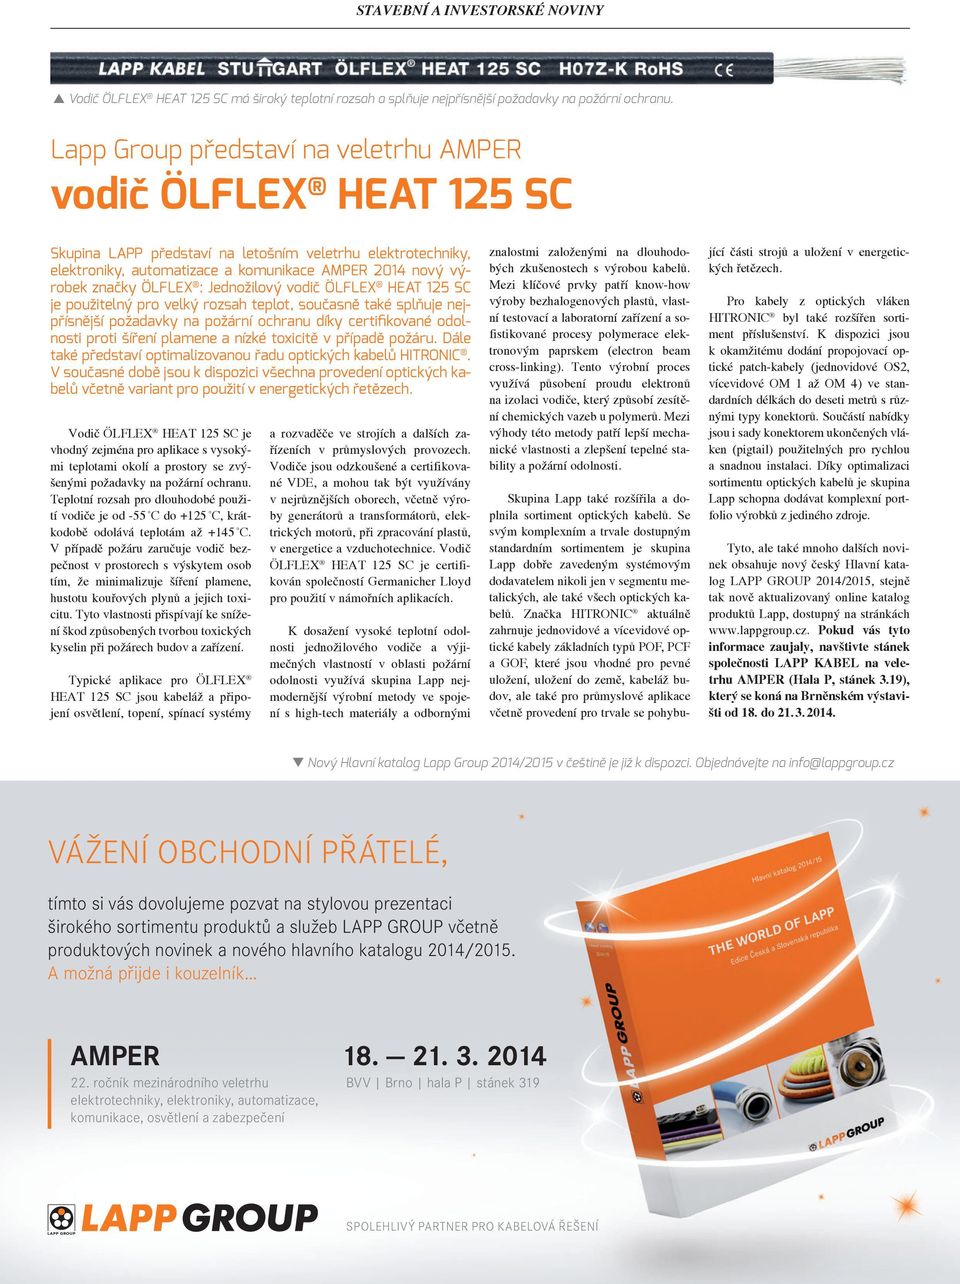 ÖLFLEX : Jednožilový vodič ÖLFLEX HEAT 125 SC je použitelný pro velký rozsah teplot, současně také splňuje nejpřísnější požadavky na požární ochranu díky certifikované odolnosti proti šíření plamene